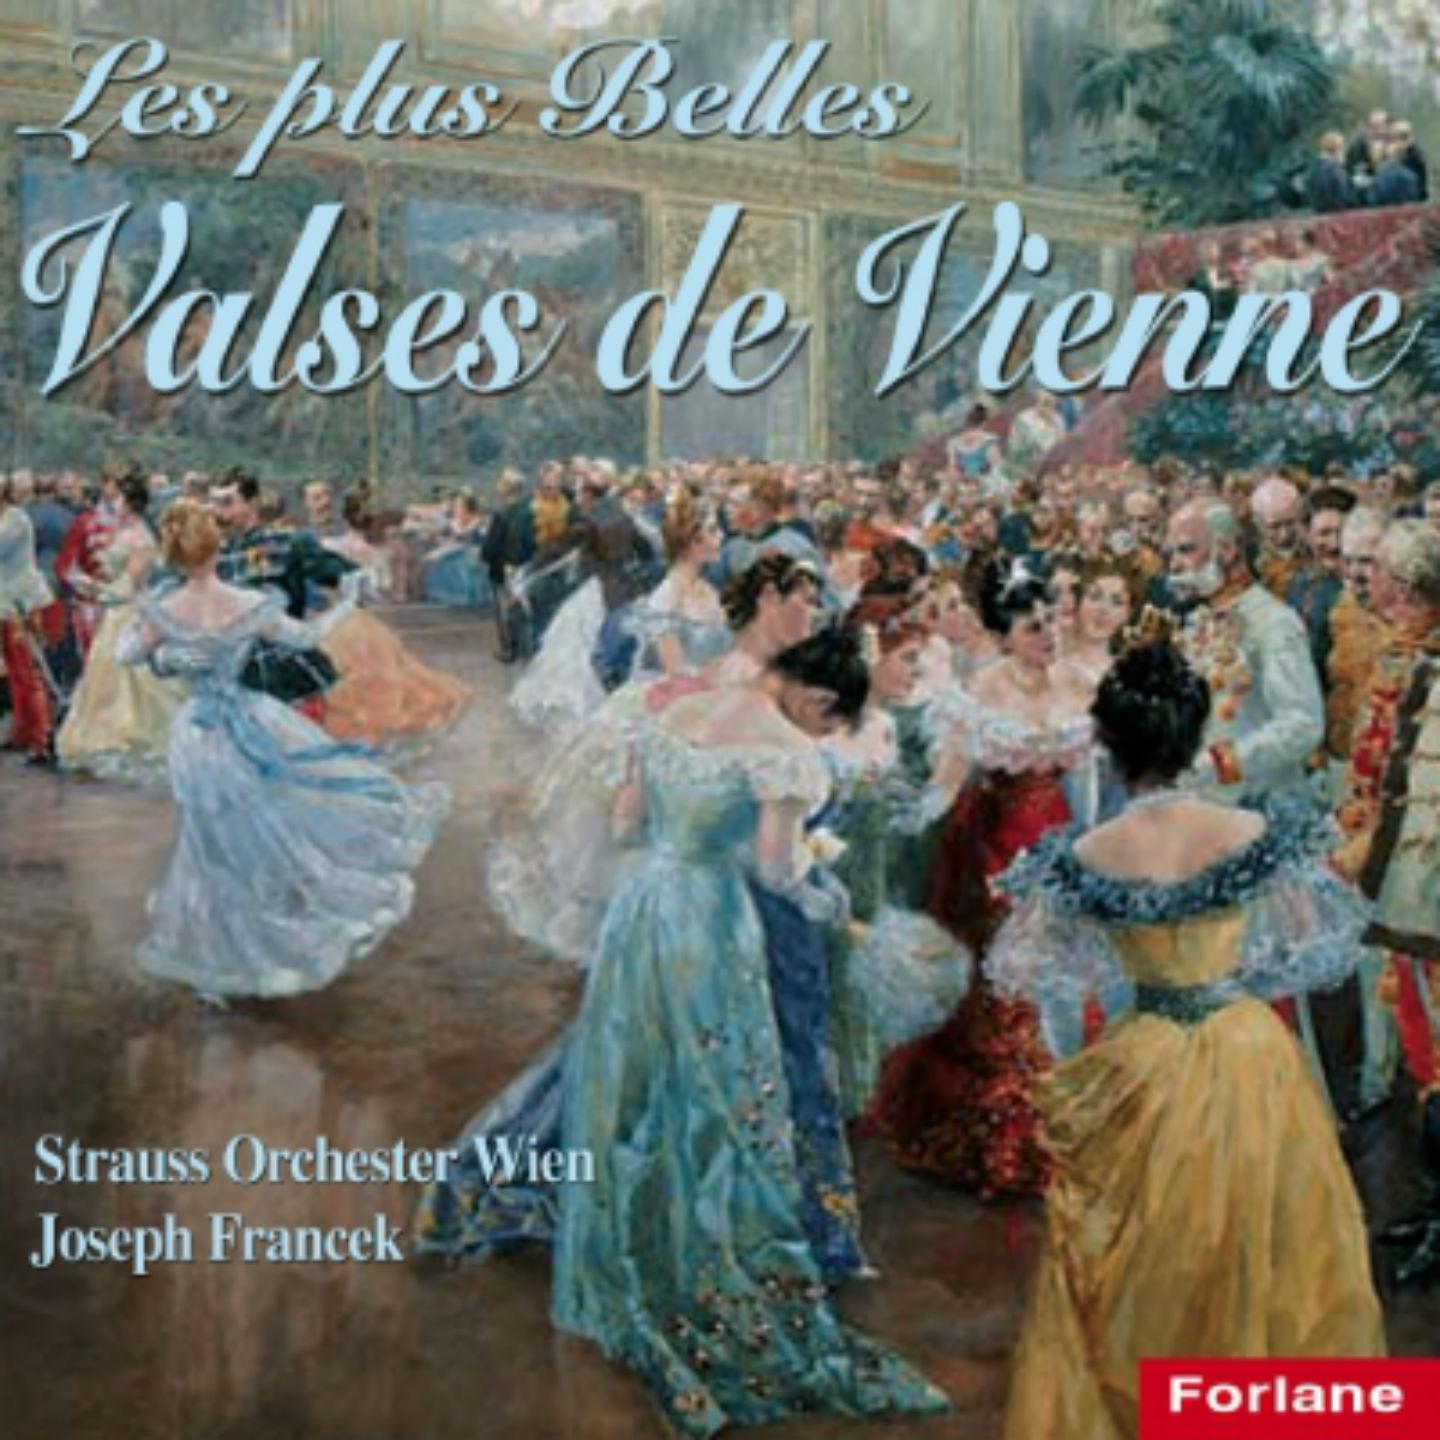 Strauss Orchester Wien - Frühlingsstimmen, Op. 410